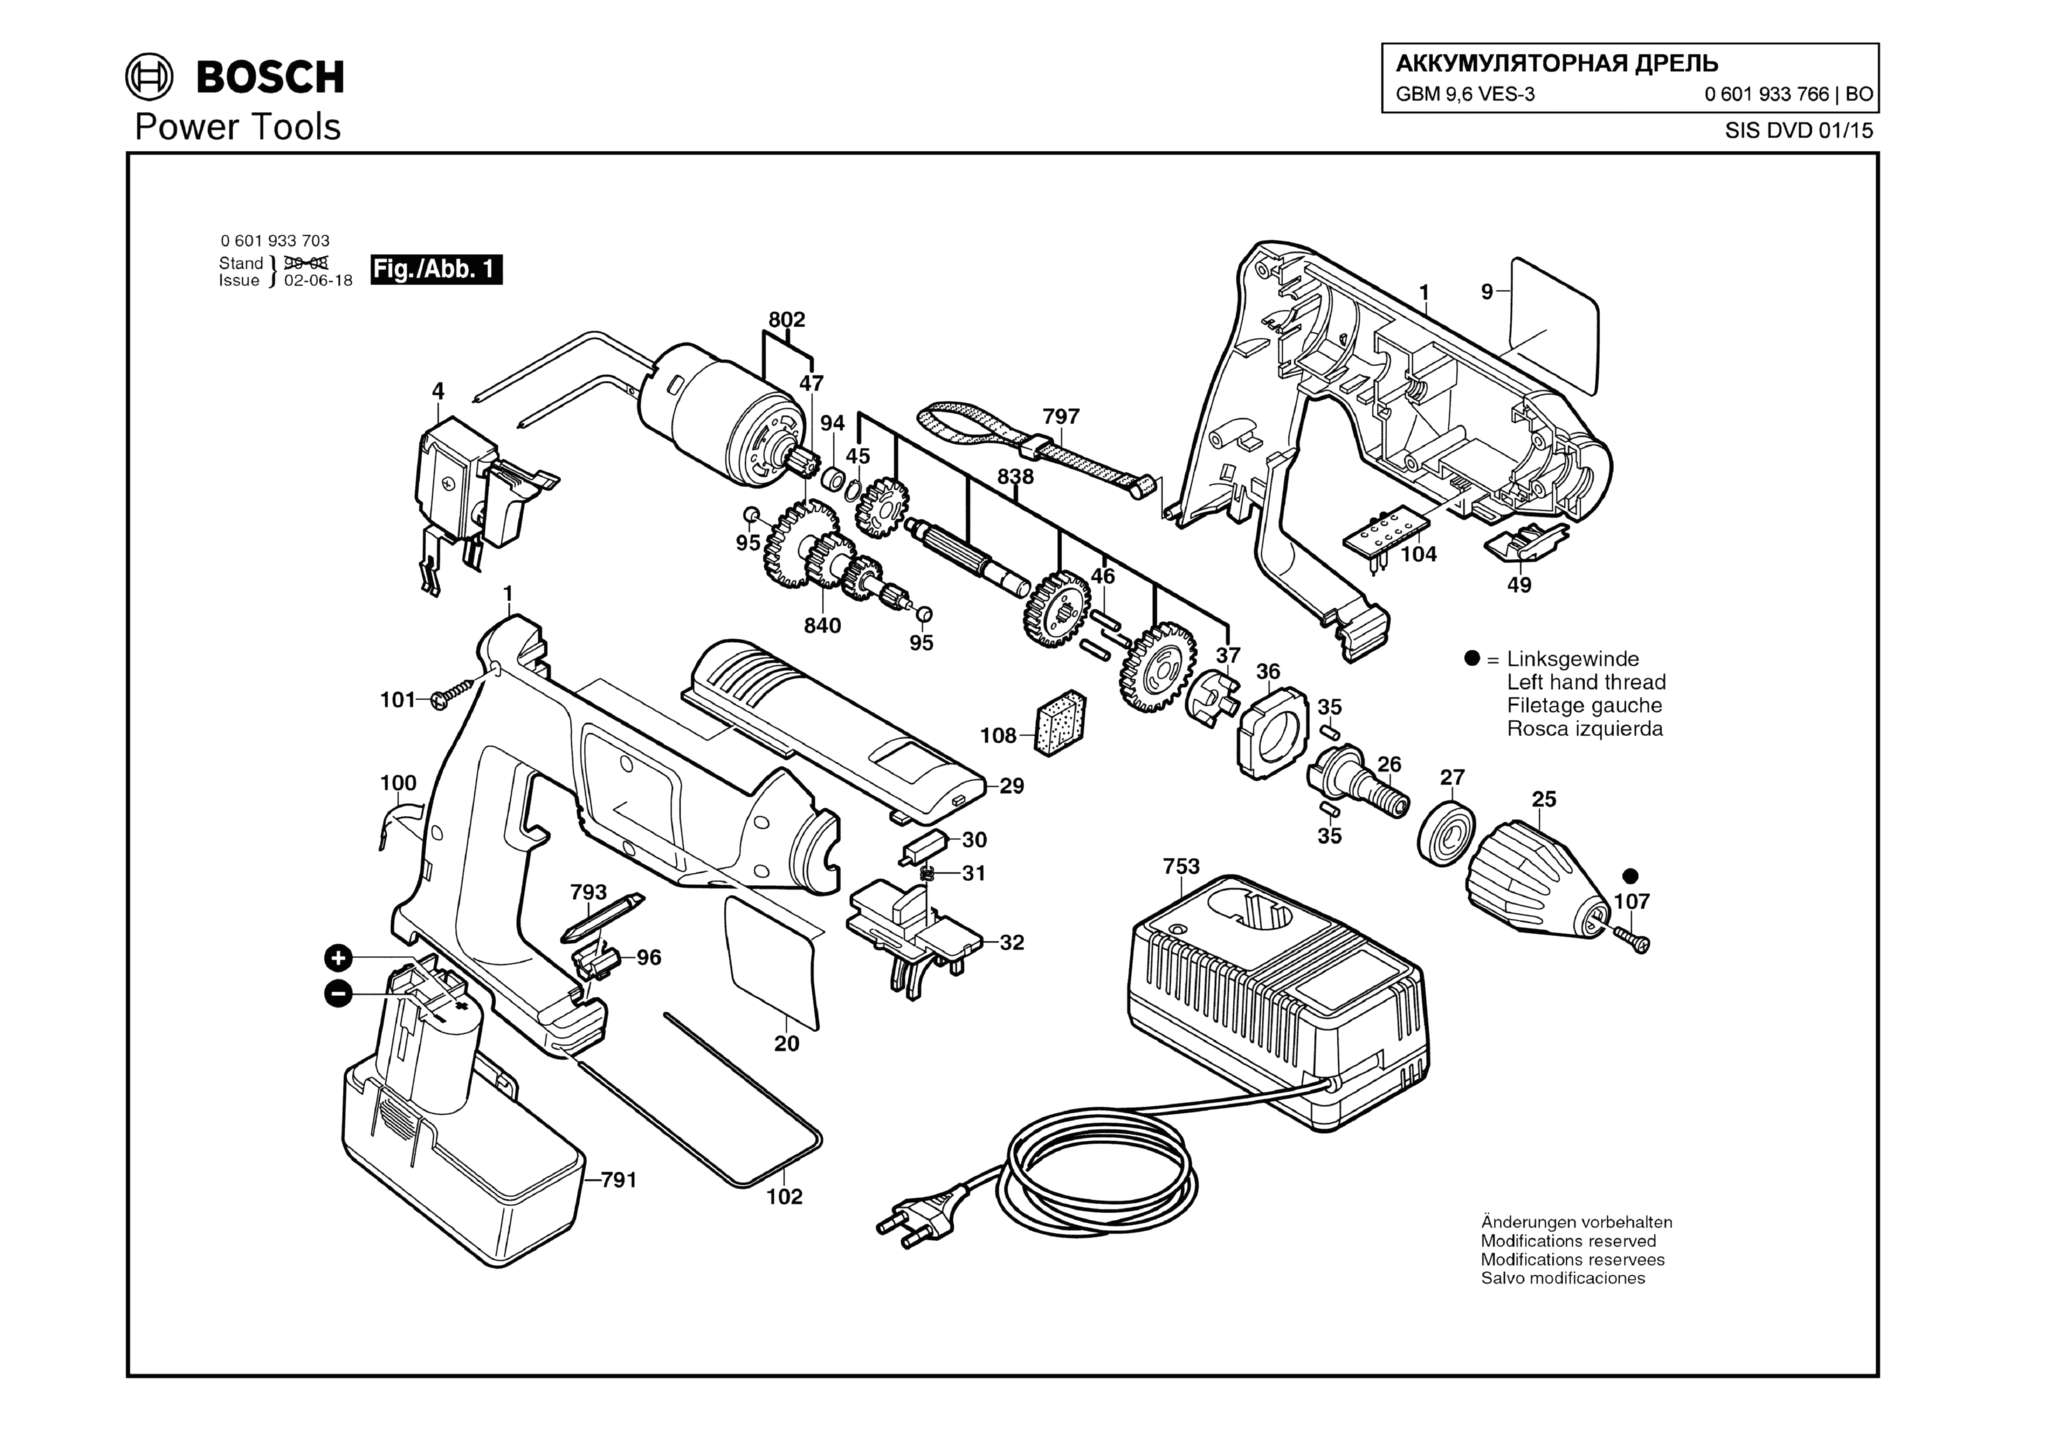 Запчасти, схема и деталировка Bosch GBM 9,6 VES-3 (ТИП 0601933766)